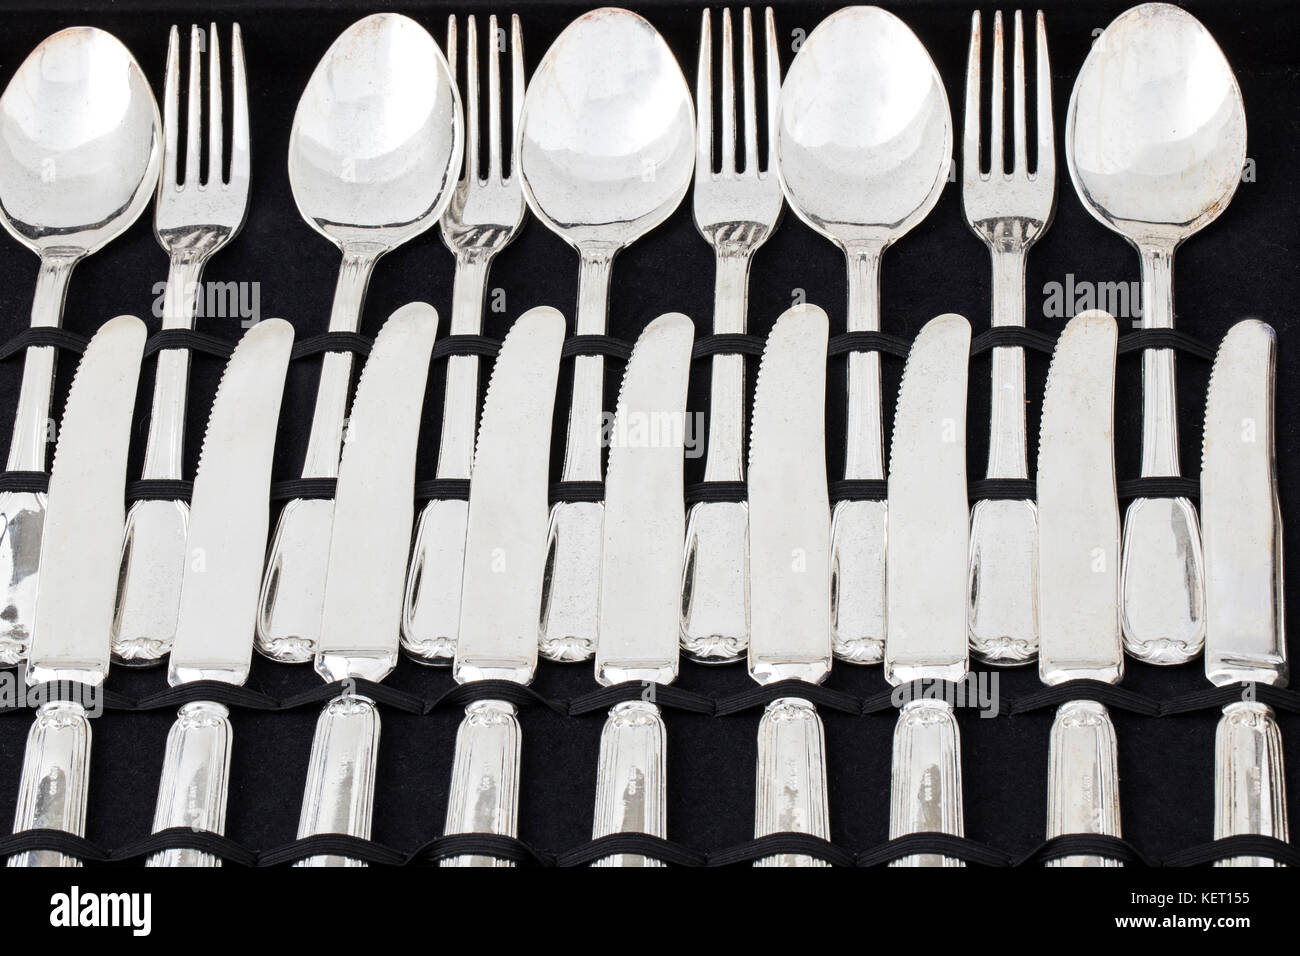 Eingestellt von Küchengeräten. Edelstahl Messer, Gabel und Löffel Suppe. Stockfoto